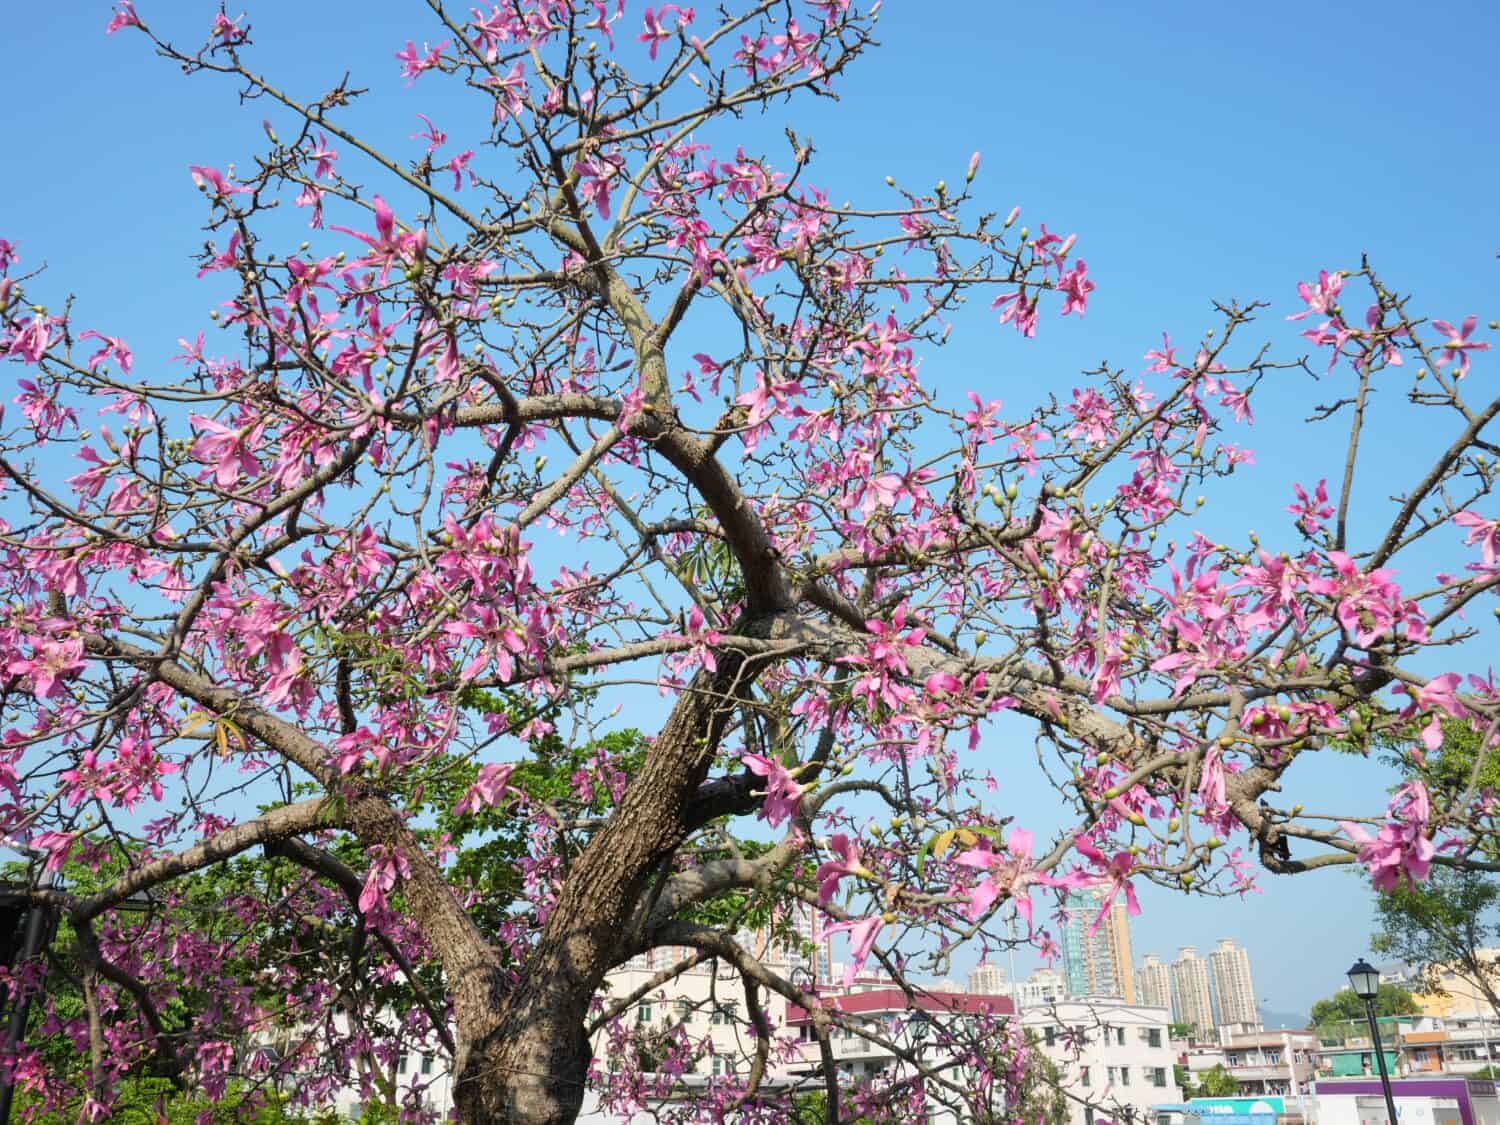 Beautiful Silk floss tree in bloom in Hong Kong